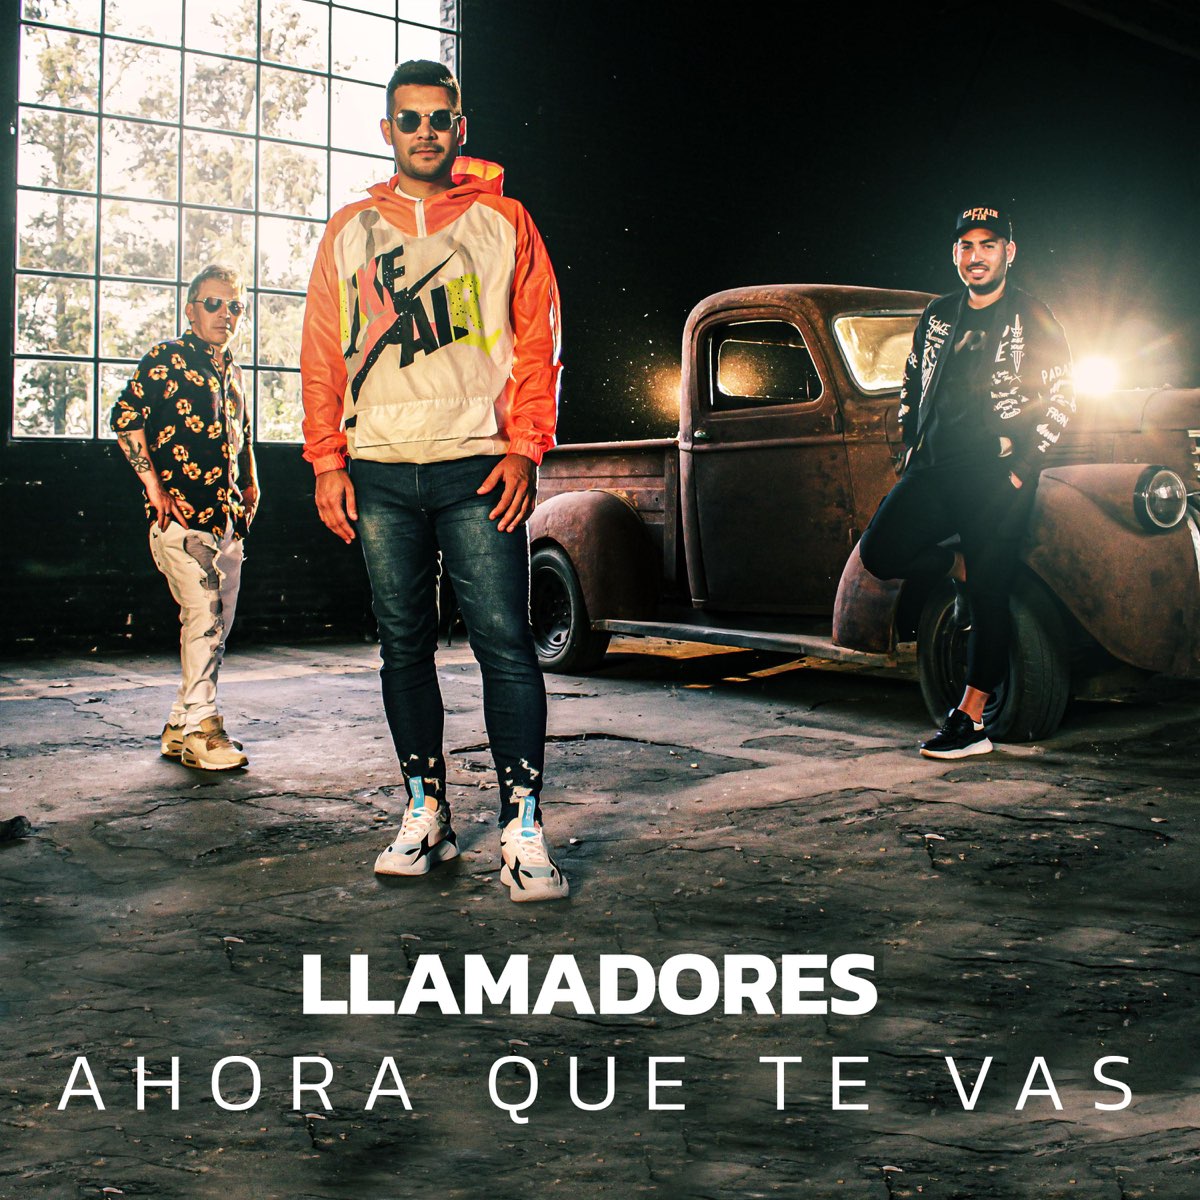 Ahora Que Te Vas - Single - Album by Los Llamadores - Apple Music